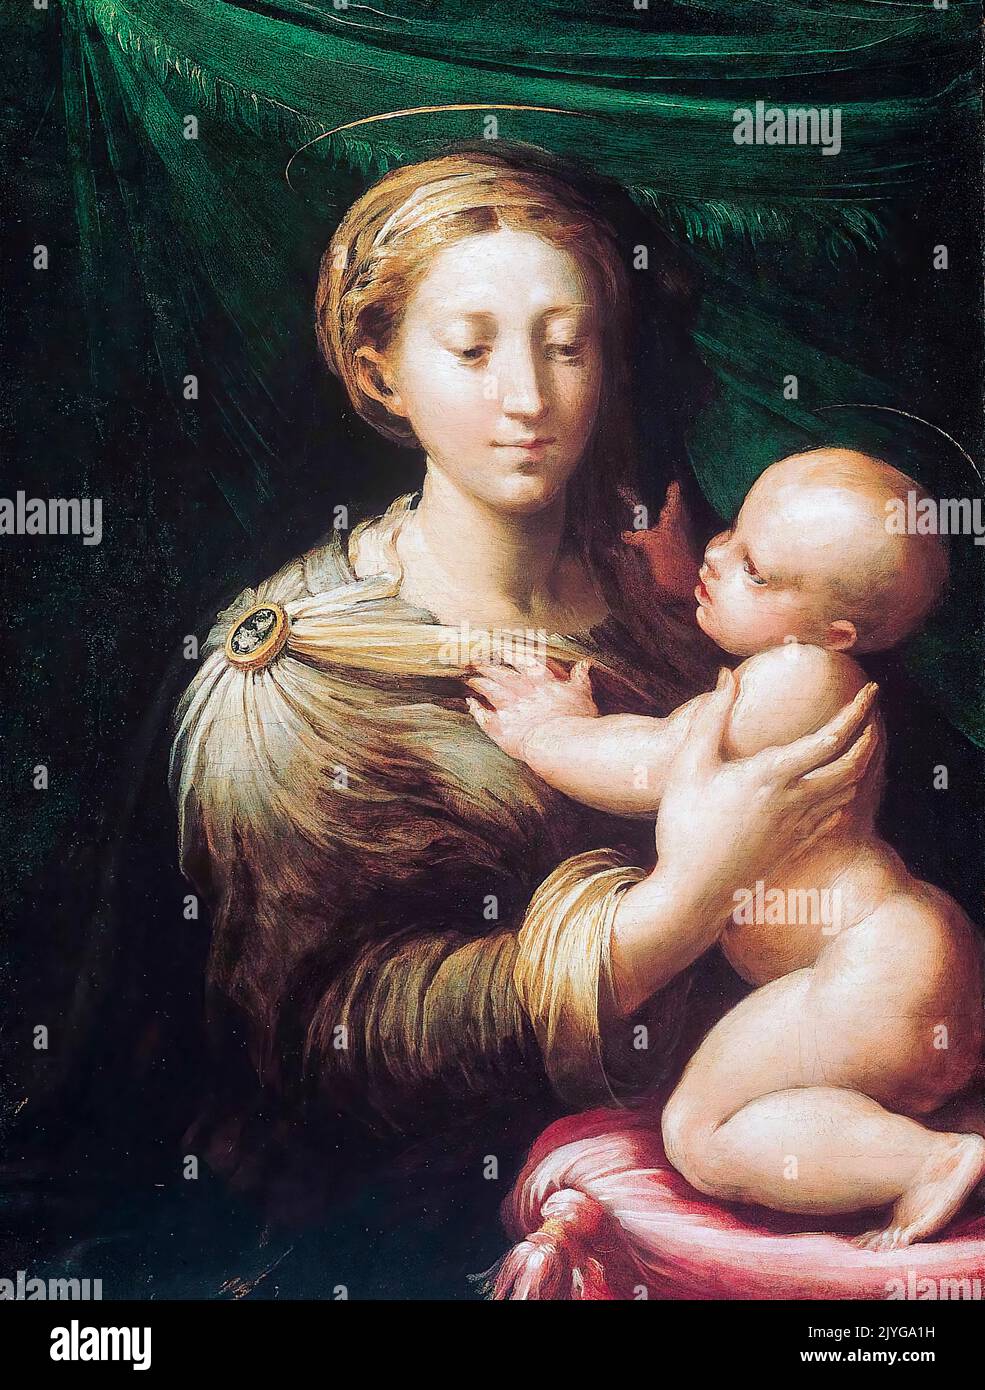 Girolamo Francesco Maria Mazzola a appelé Parmigianino, la Madonna et l'enfant, peinture dans l'huile sur panneau, 1527-1530 Banque D'Images